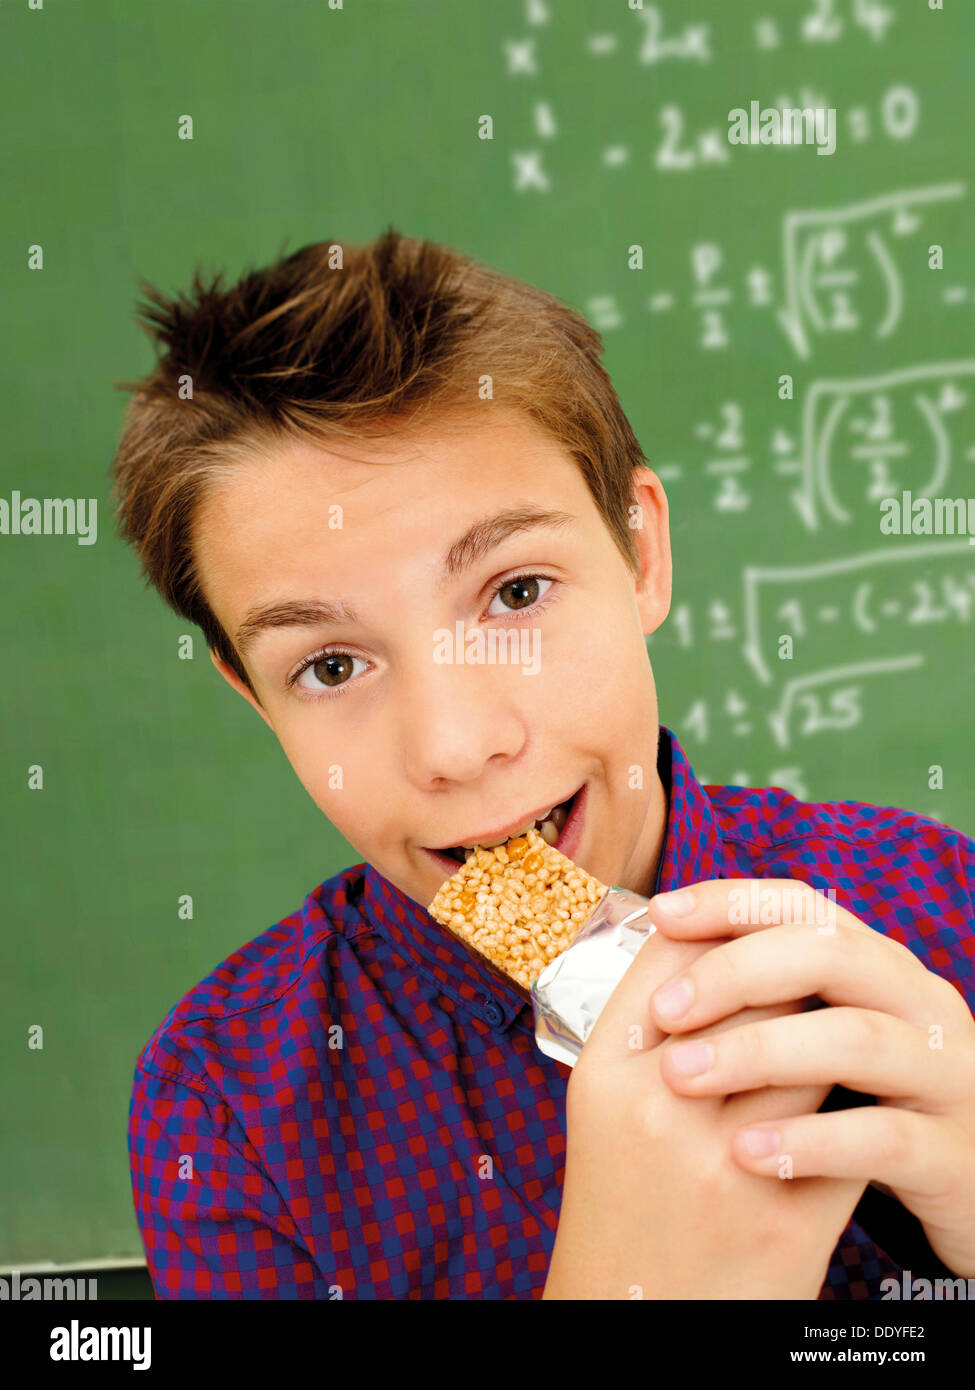 Portrait, écolier, adolescent mordre dans une barre de muesli devant une école tableau avec une équation mathématique Banque D'Images